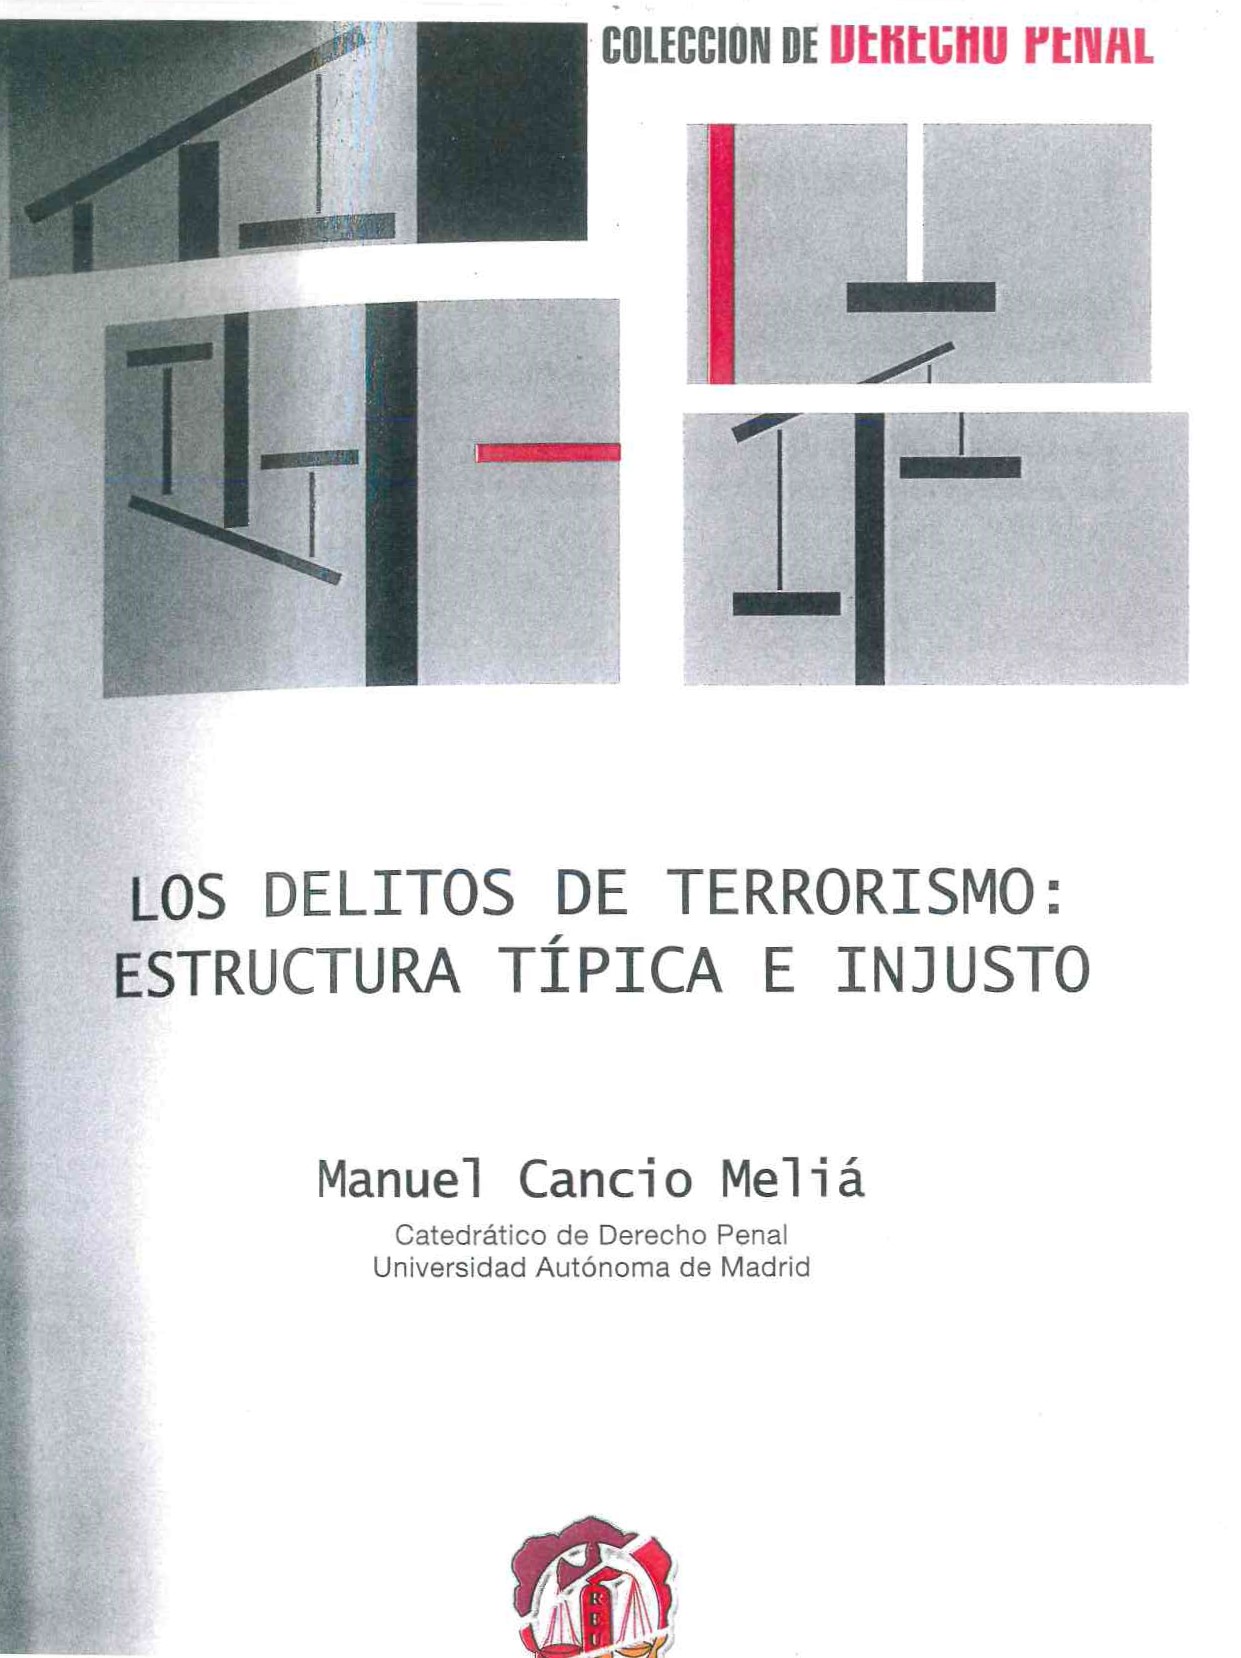 Los delitos de terrorismo: estructura típica e injusto